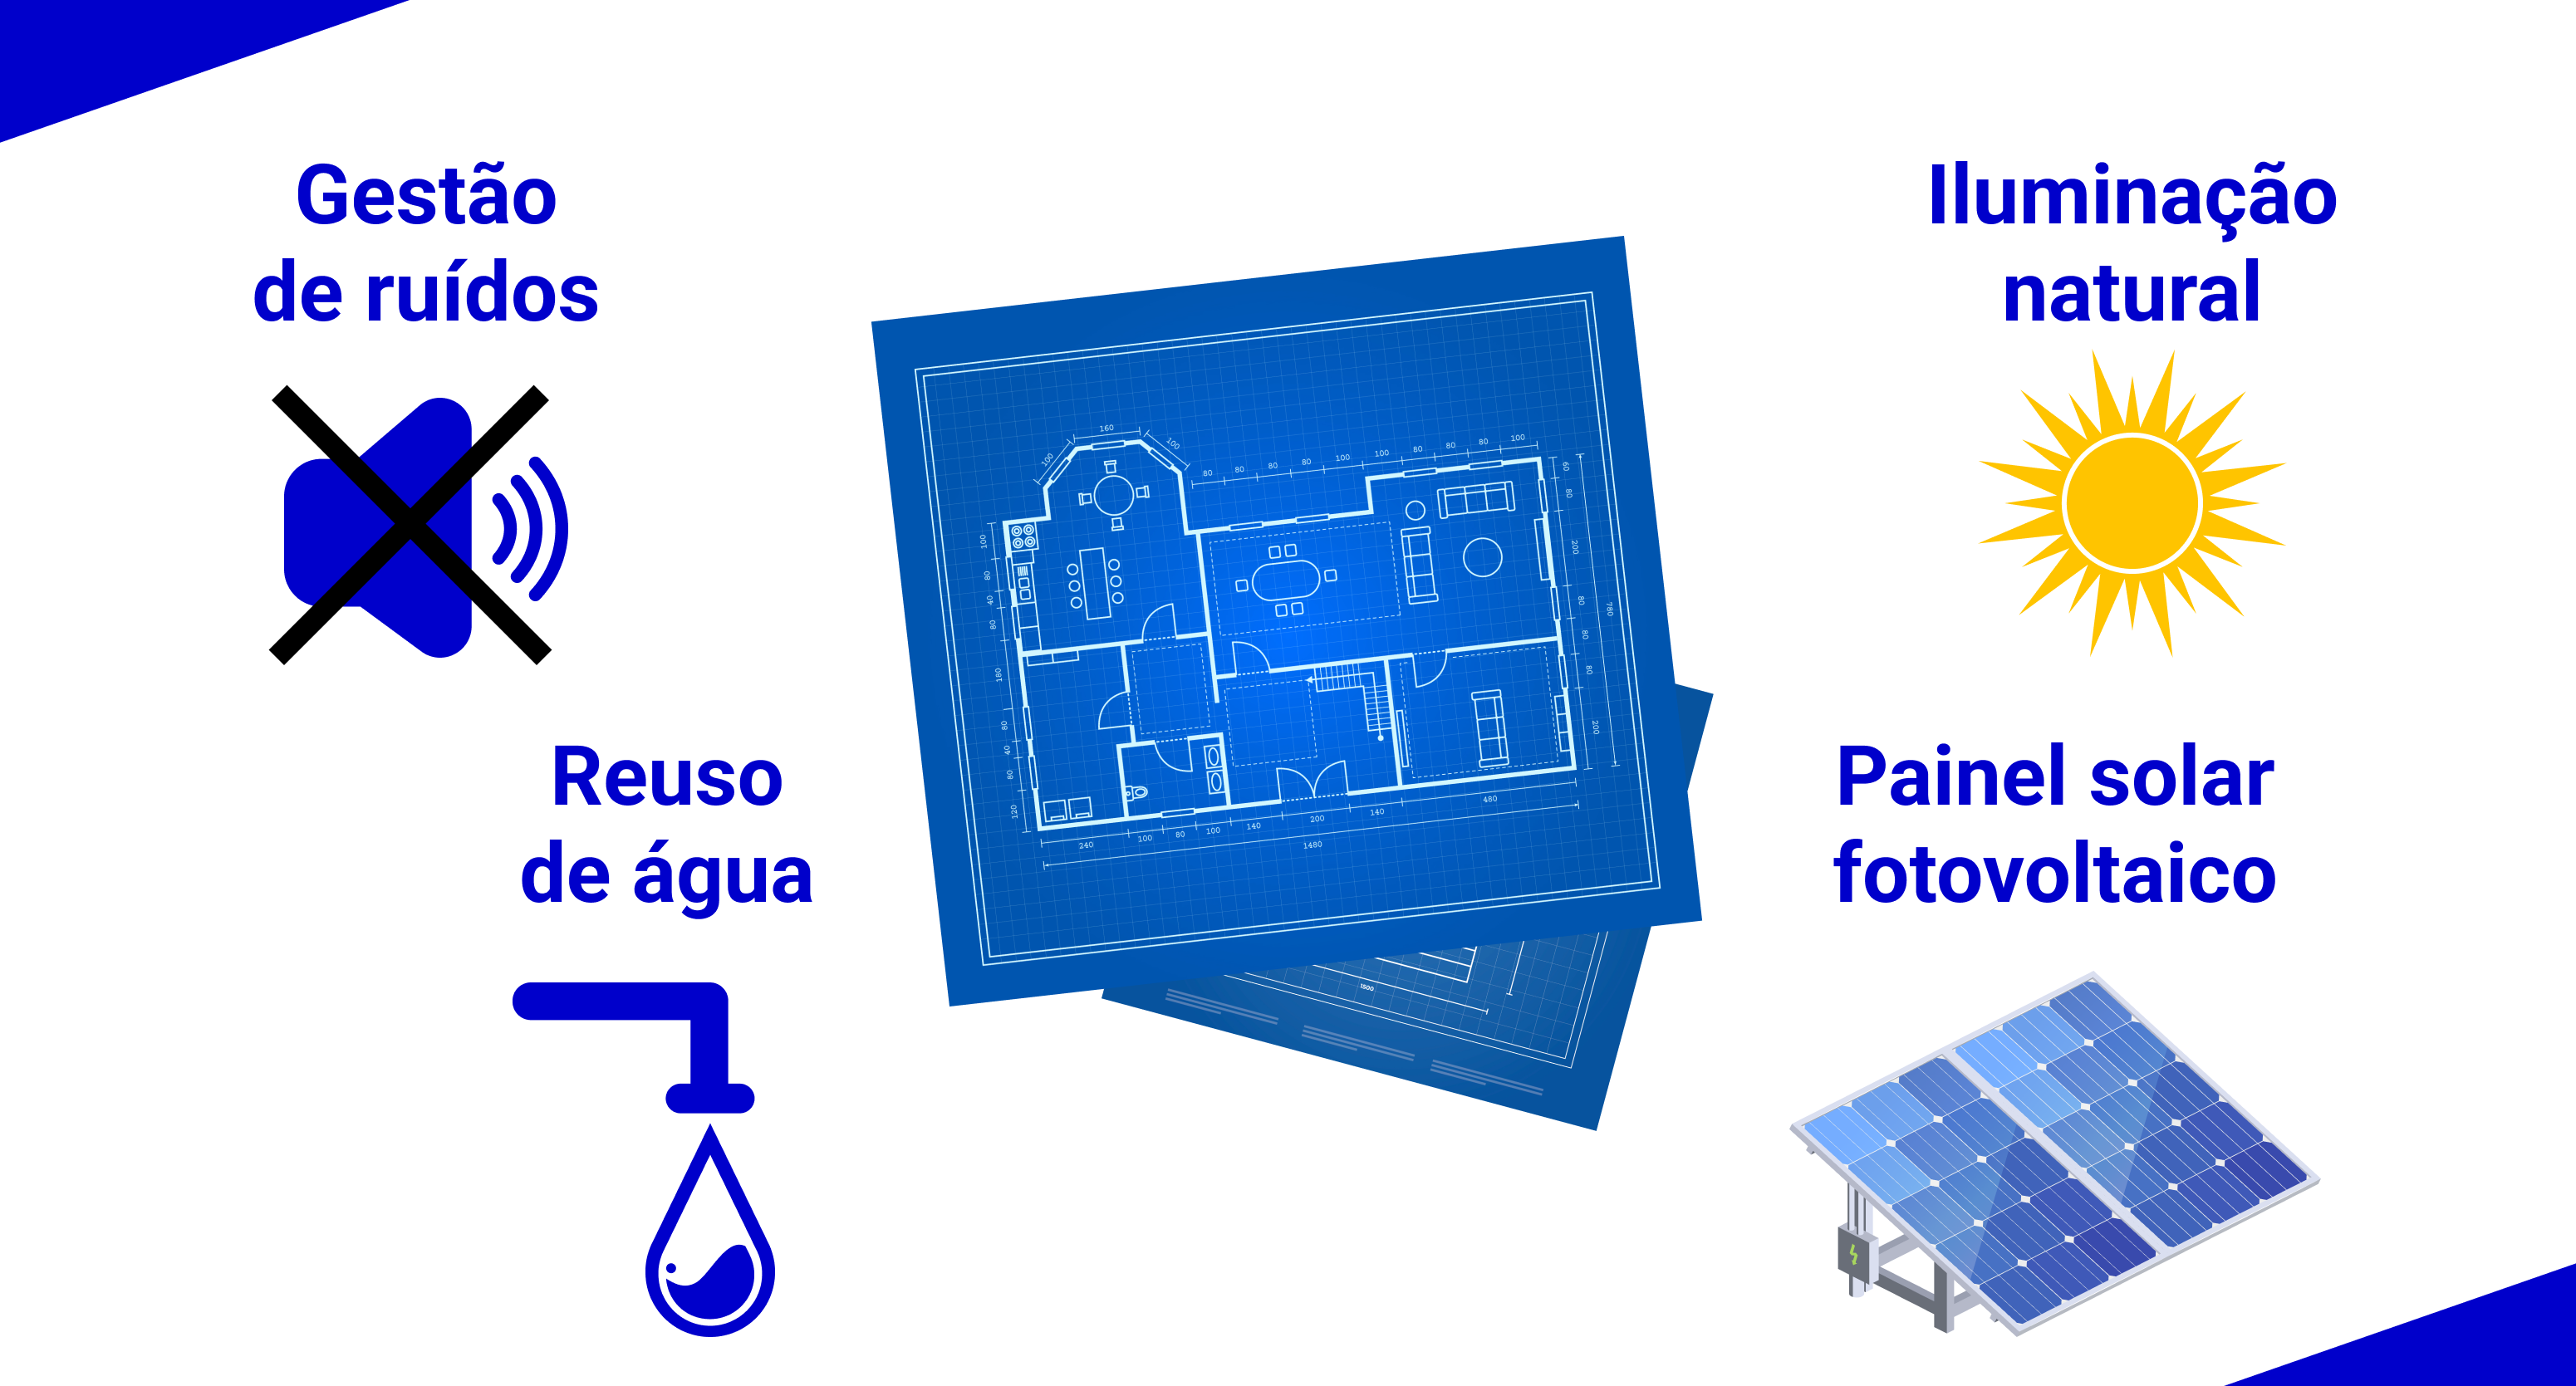 Elementos que podem tornar a arquitetura sustentável: Gestão de ruídos; Reuso de água; Iluminação natural; Painel solar fotovoltaico.